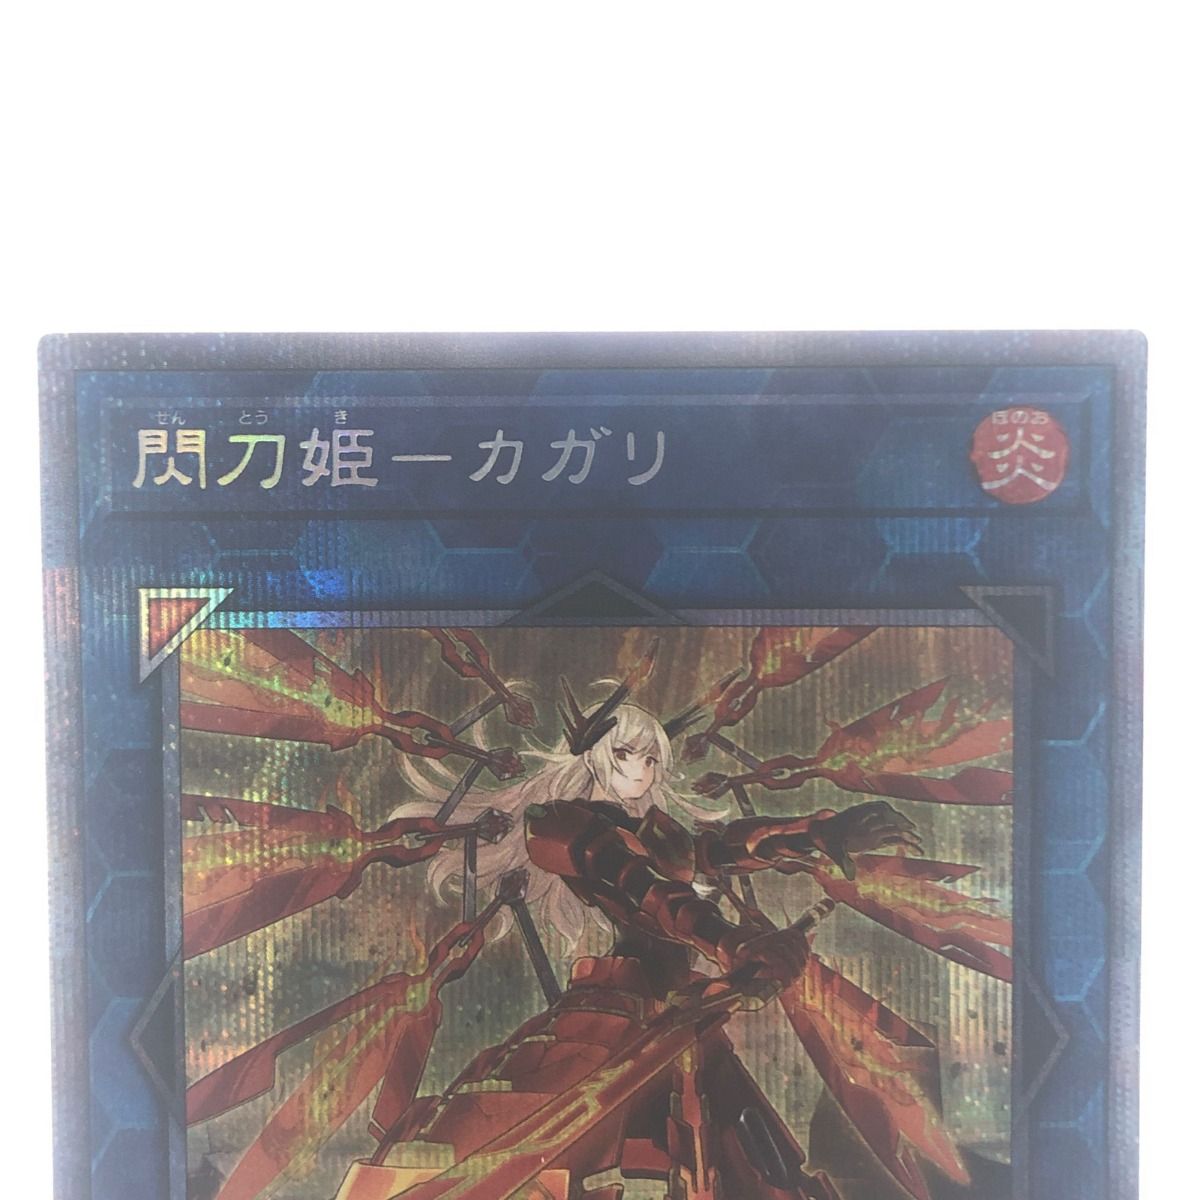 ▽▽ 遊戯王 閃刀姫-カガリ JP022 PSE プリズマティックシークレット